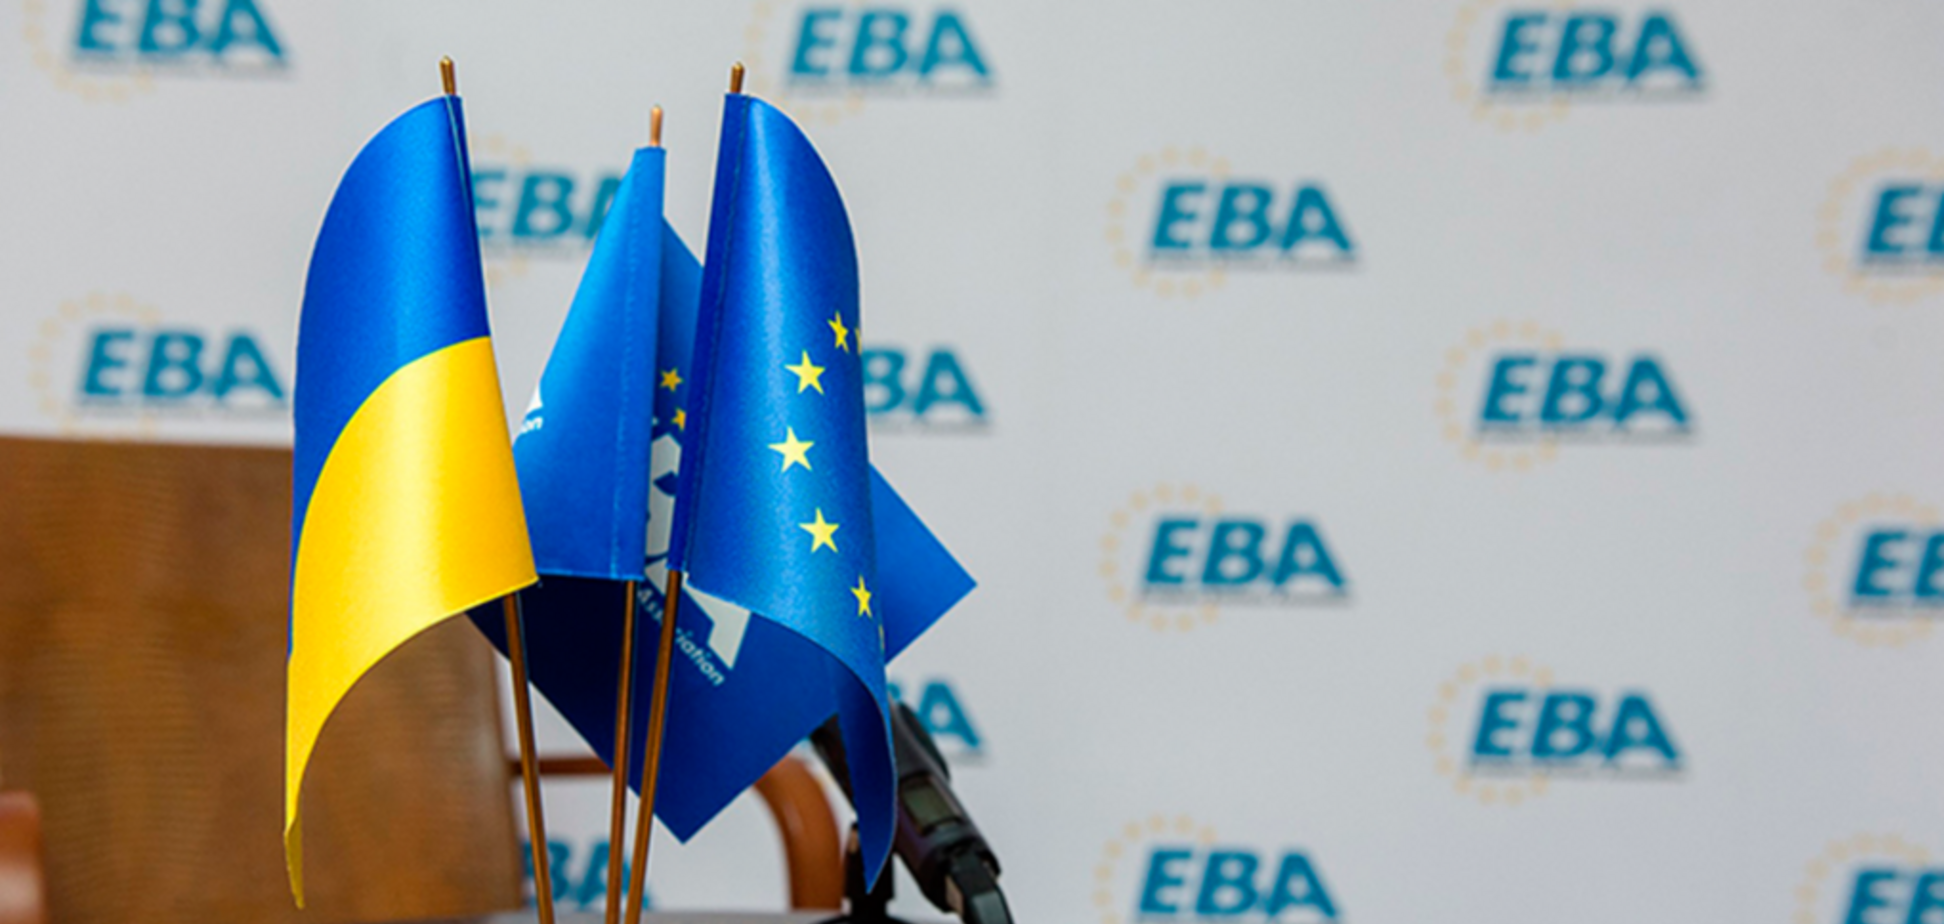 'Угроза для бизнеса': ЕБА выступила за внесение изменений в закон №1210